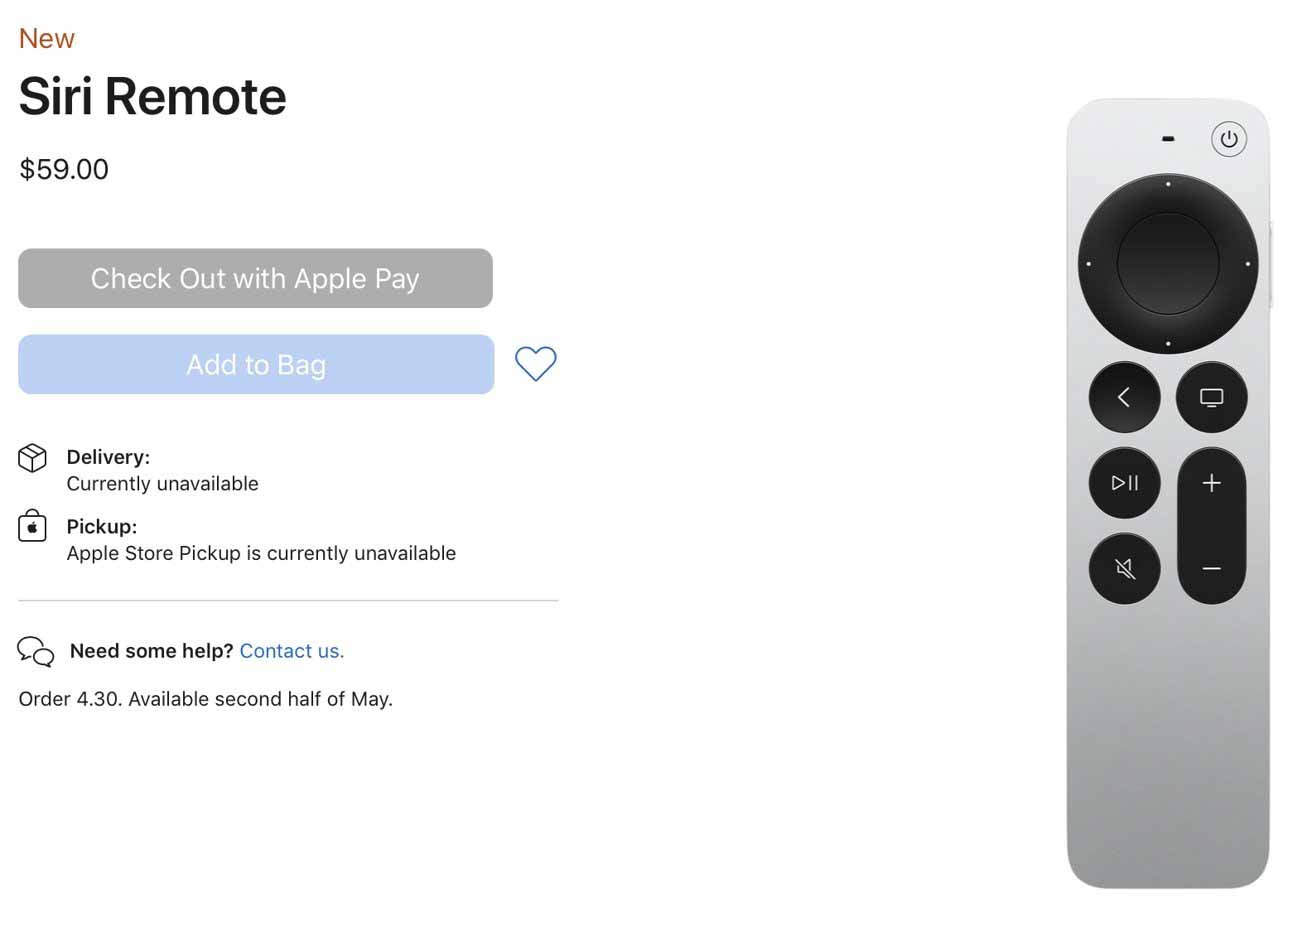 Новый пульт Siri Remote 2-го поколения от Apple, обратно совместимый со старыми телевизорами Apple TV, доступен за 59 долларов.